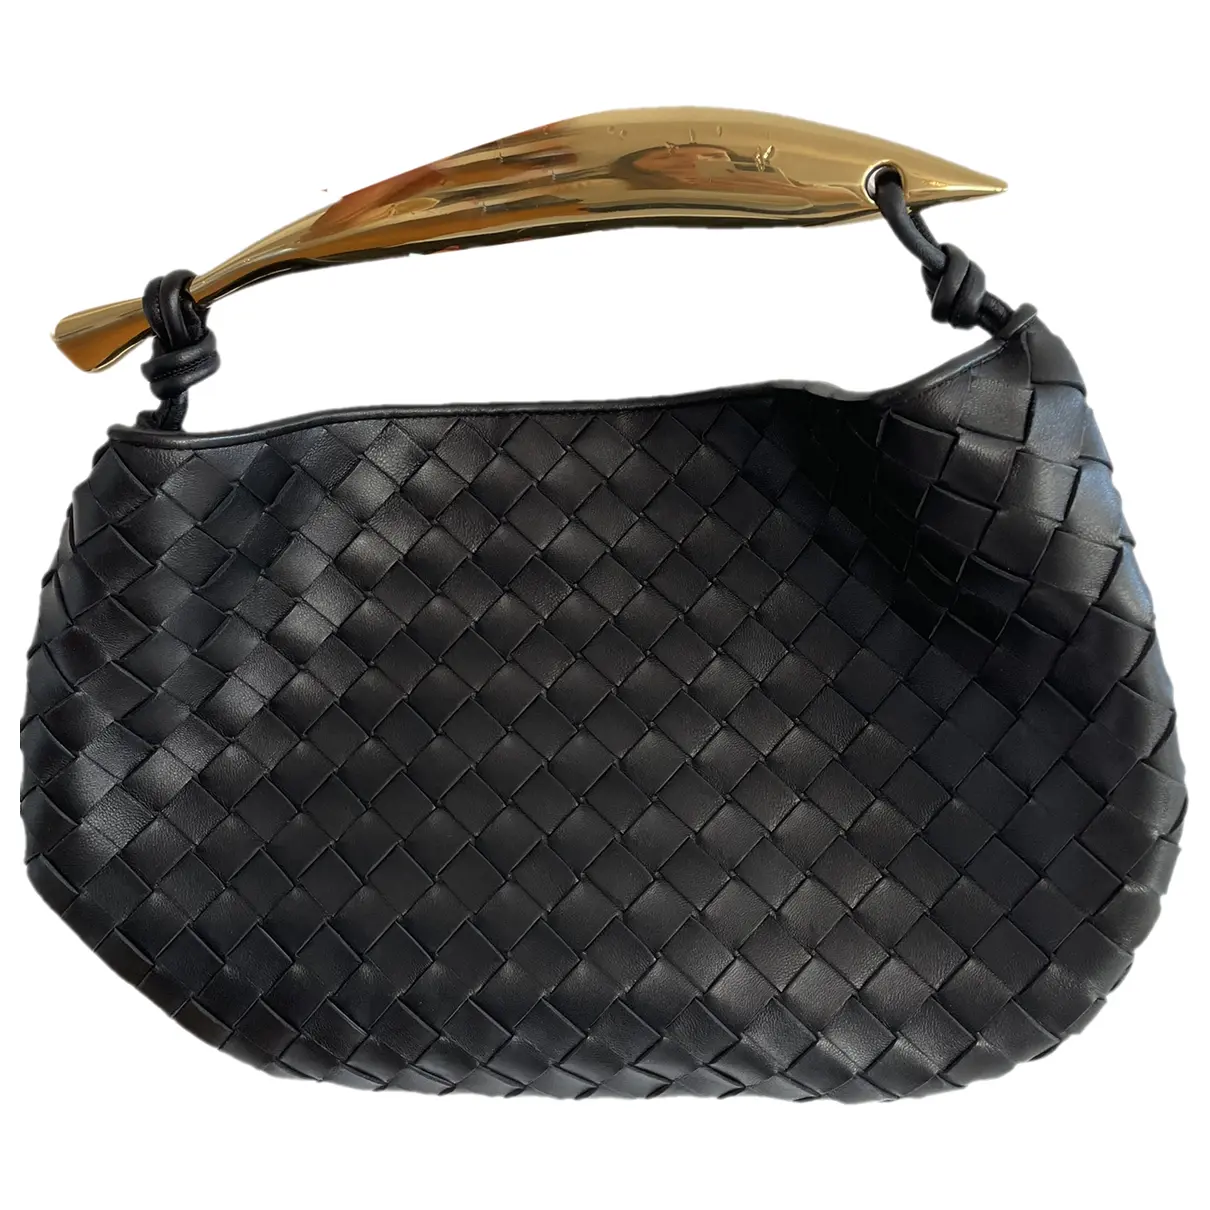 Sardine leather handbag Bottega Veneta